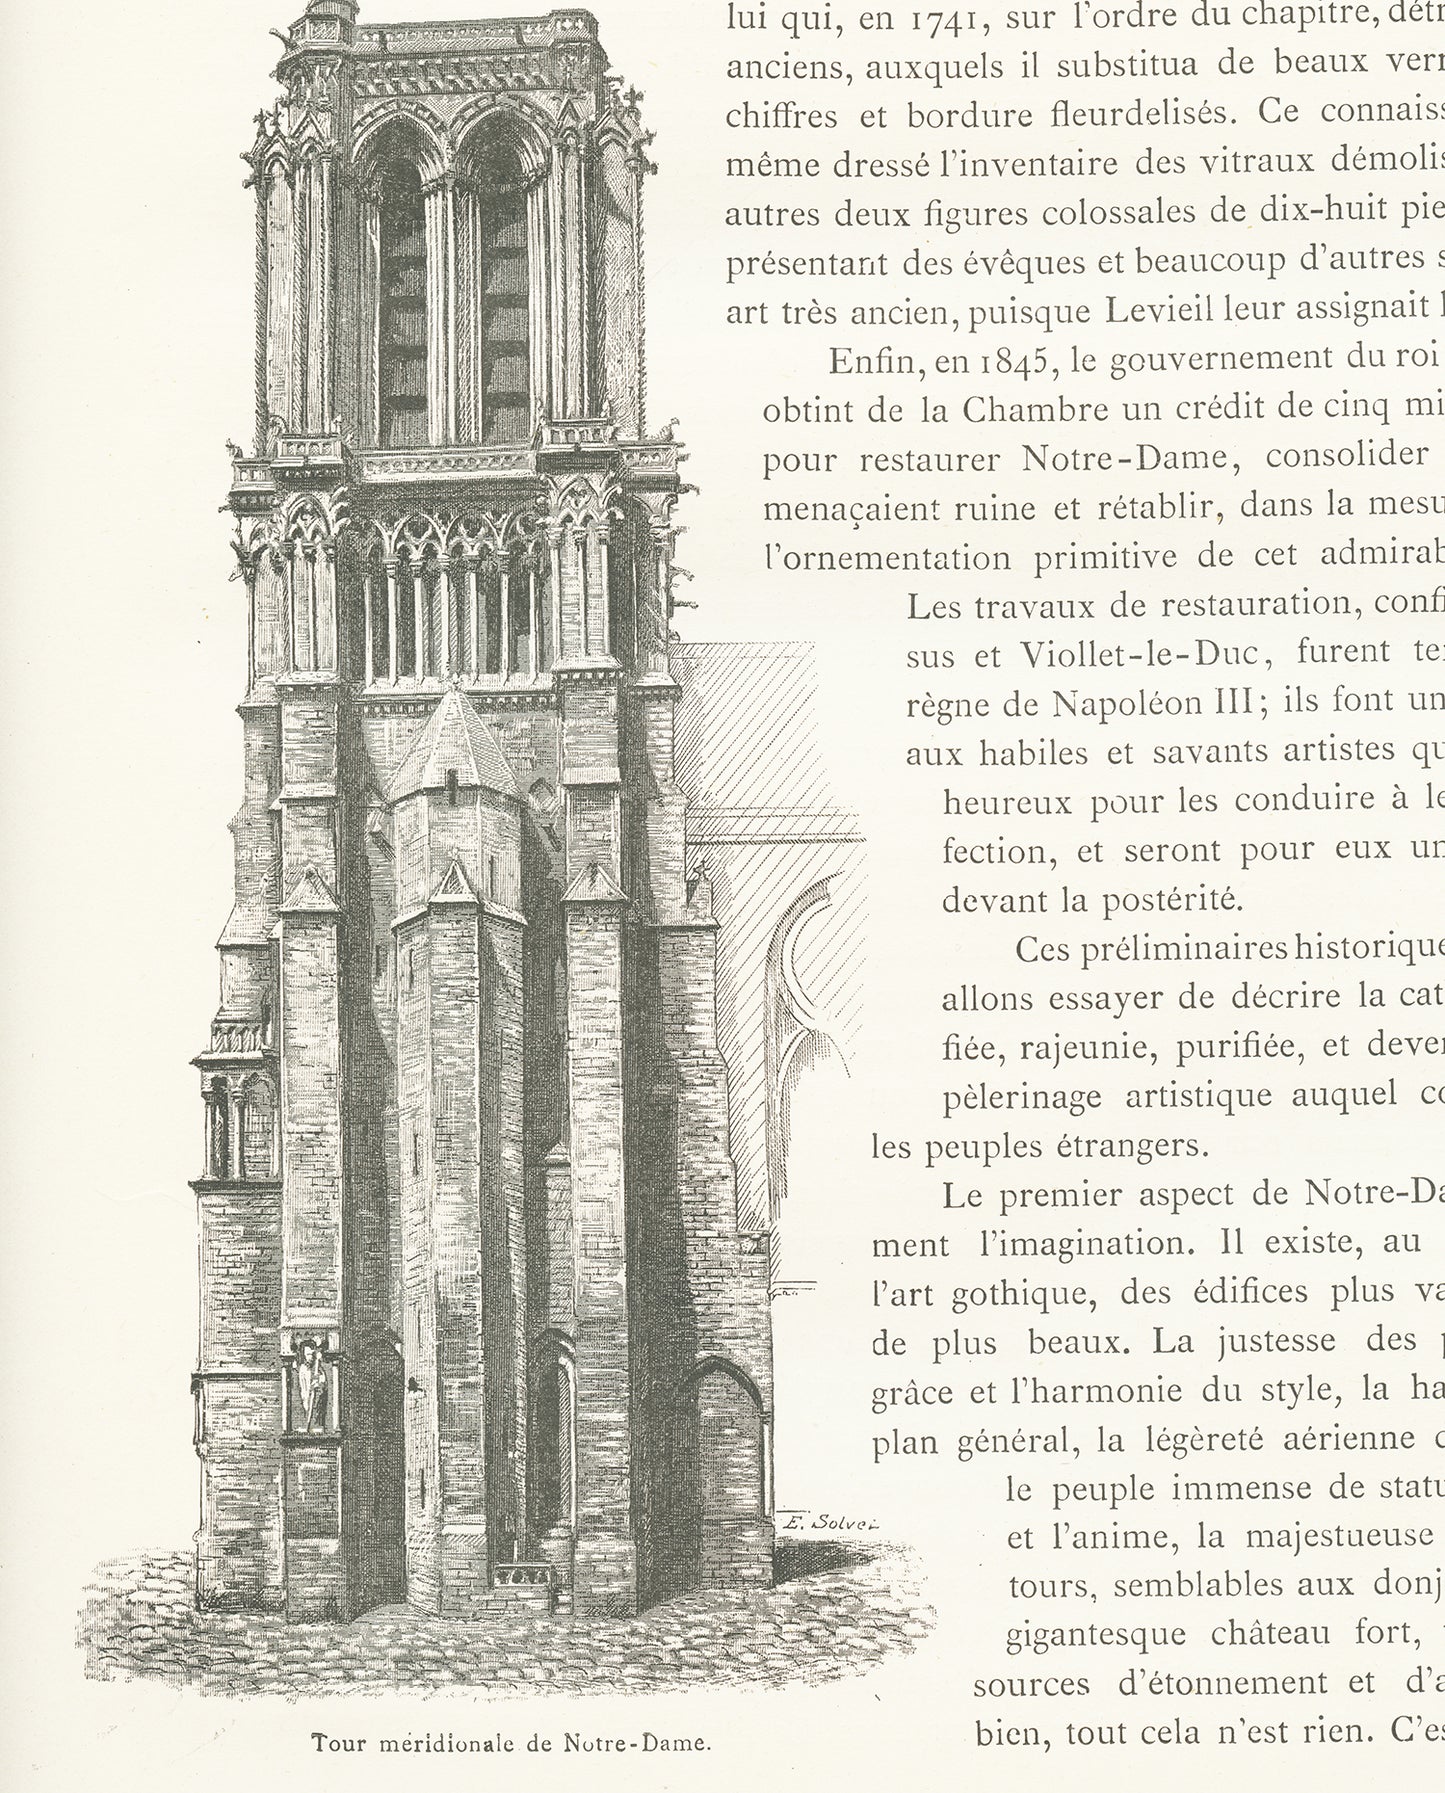 1889 South Tower of Notre Dame de Paris lithograph